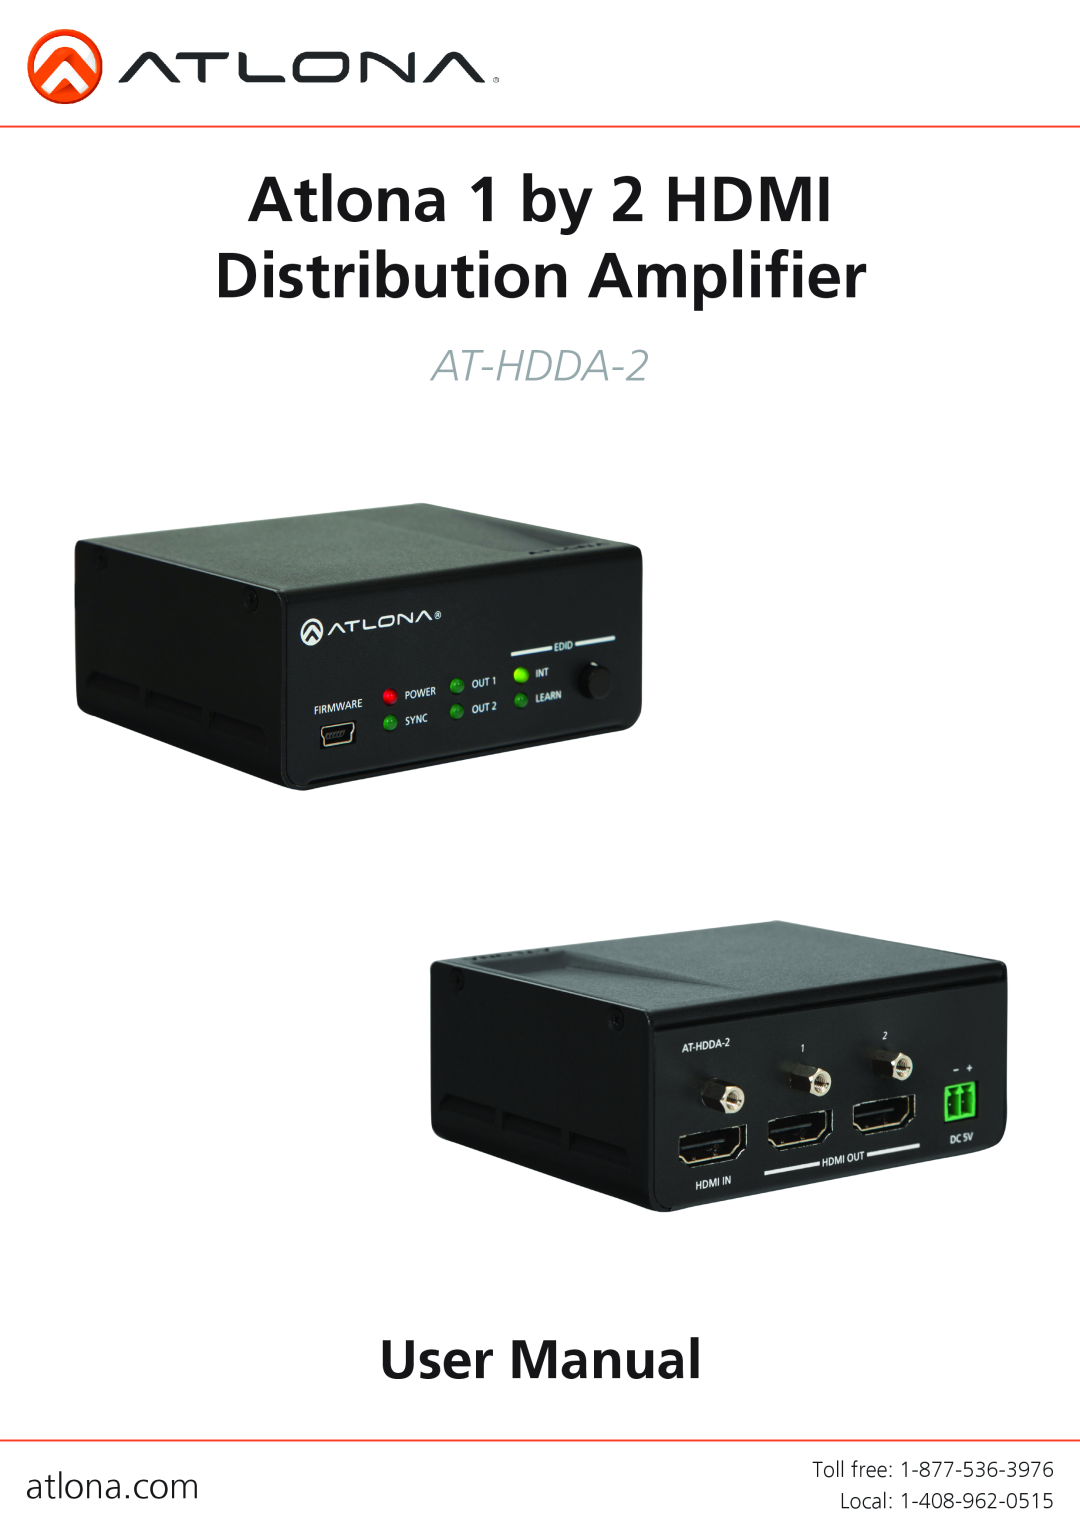 Atlona AT-HDDA-2 user manual Atlona 1 by 2 HDMI Distribution Amplifier 